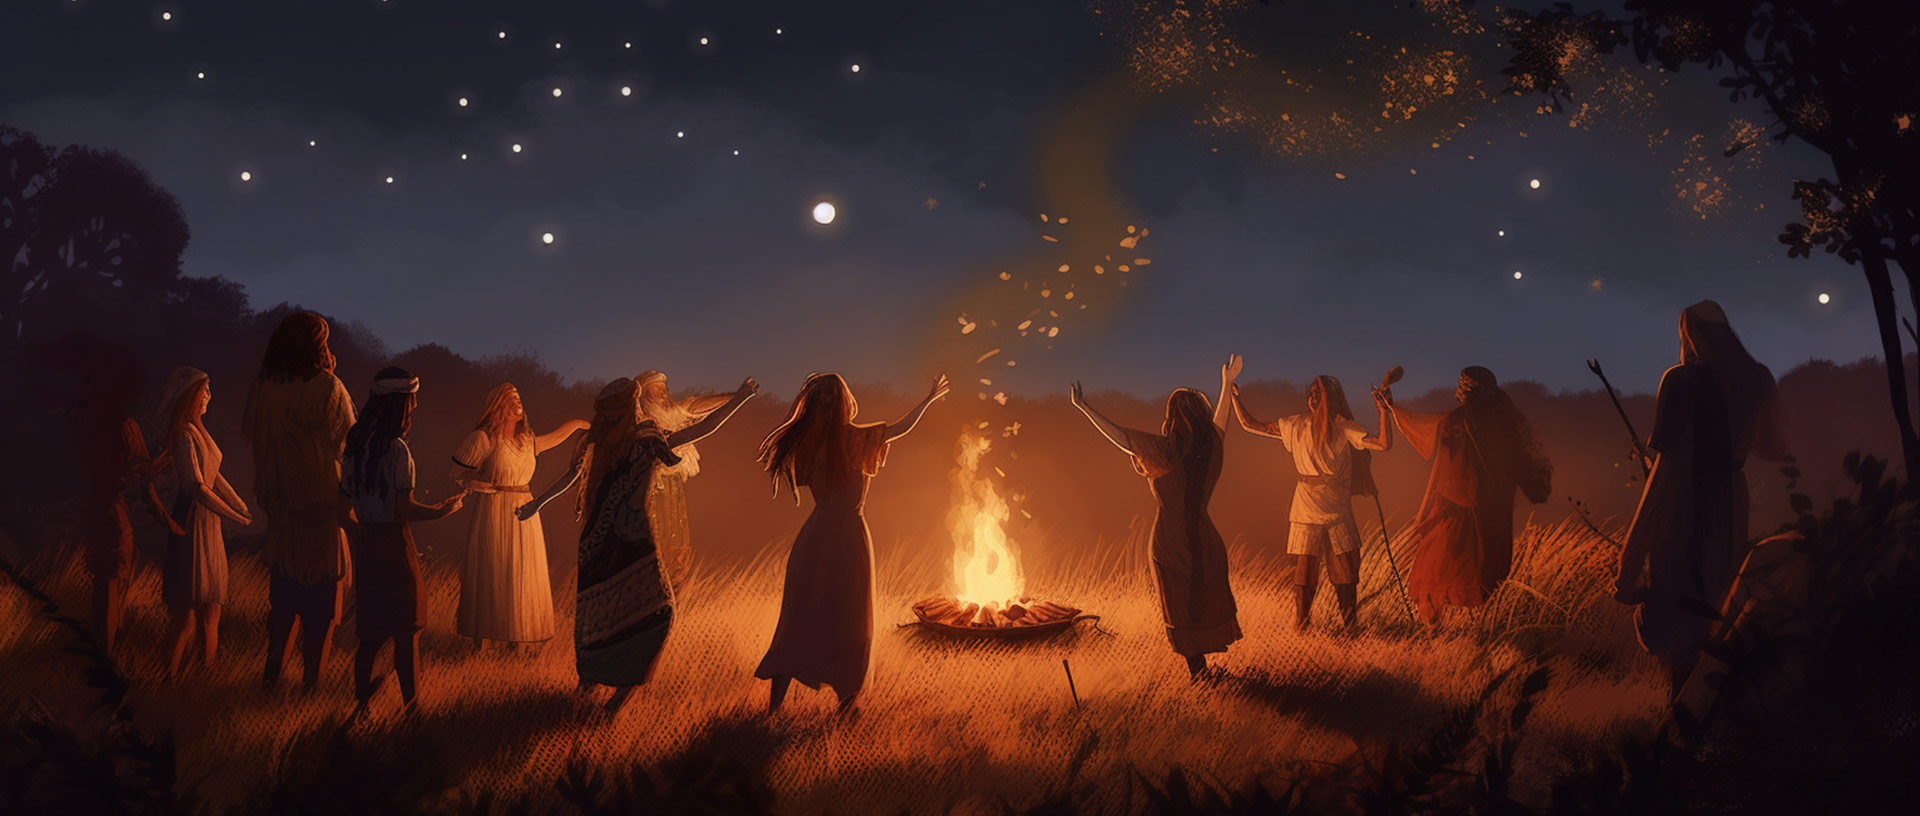 Frauen in Gewändern und Männer in traditioneller Kleidung tanzen um ein Feuer vor dem nächtlichen Sternenhimmel